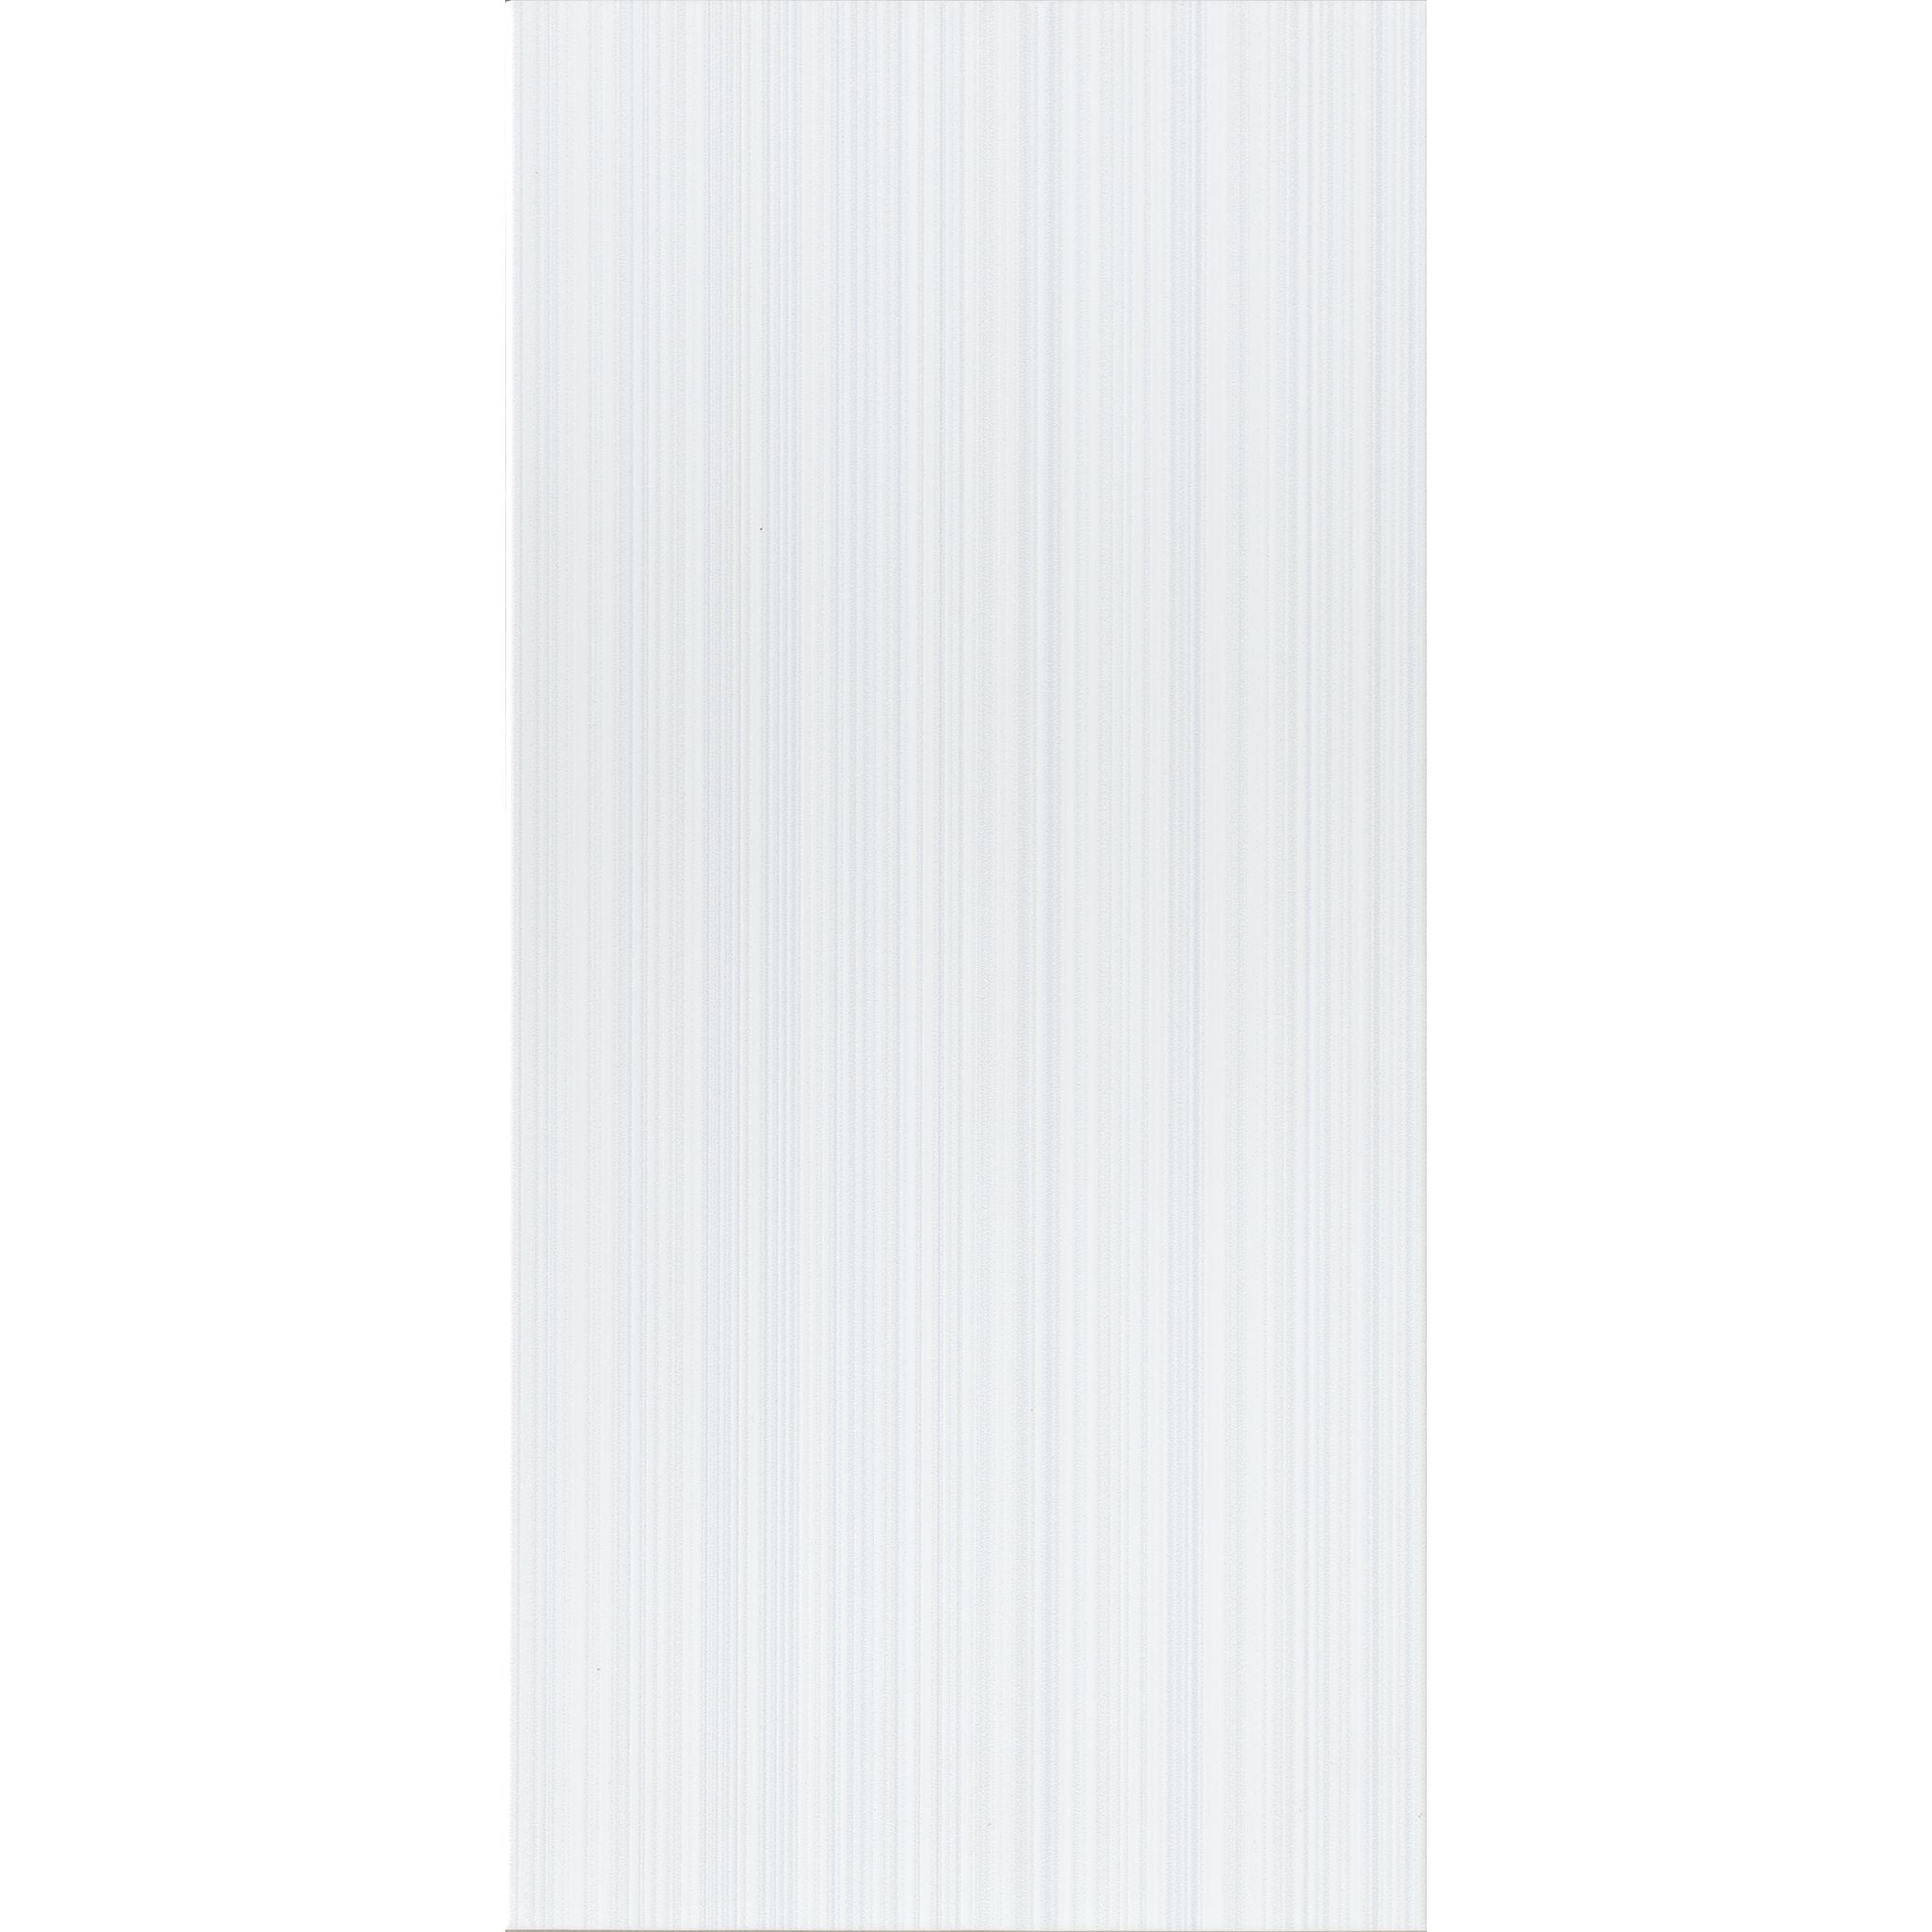 Brixton Wall Tile (Grey or White) - 25 x 50cm